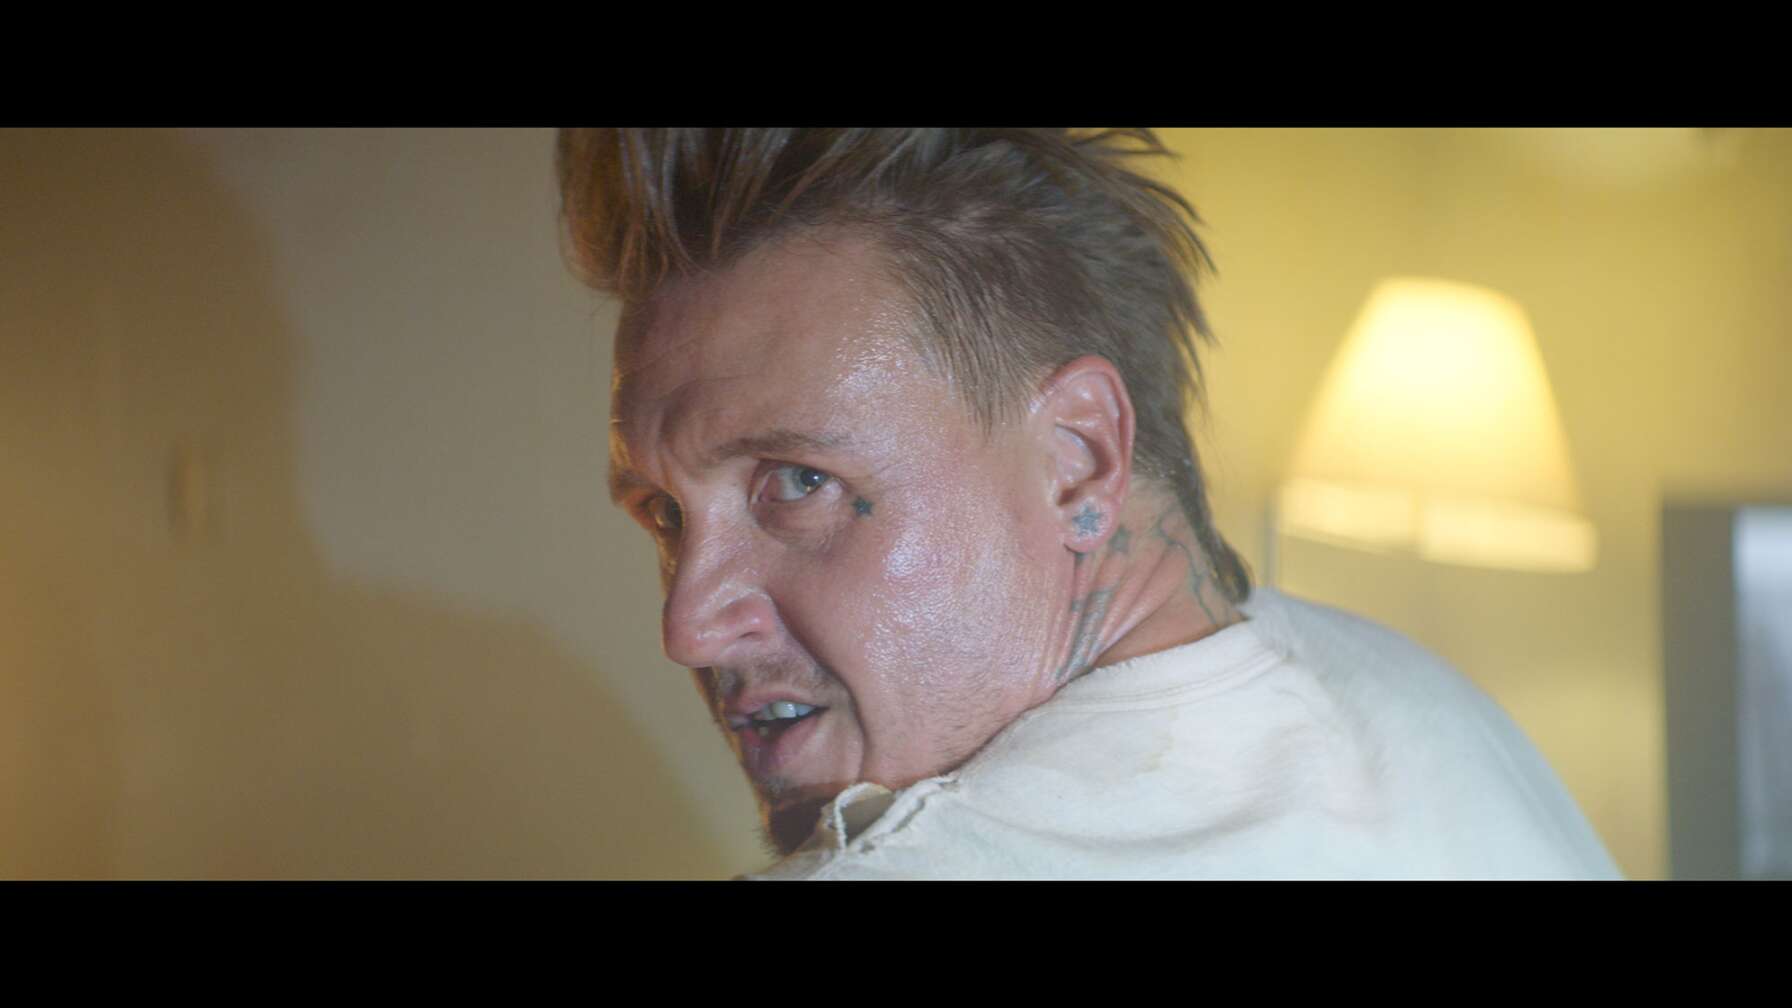 Papa Roach-Frontmann Jacoby Shaddix bei seinem Gastauftritt in "The Retaliators".